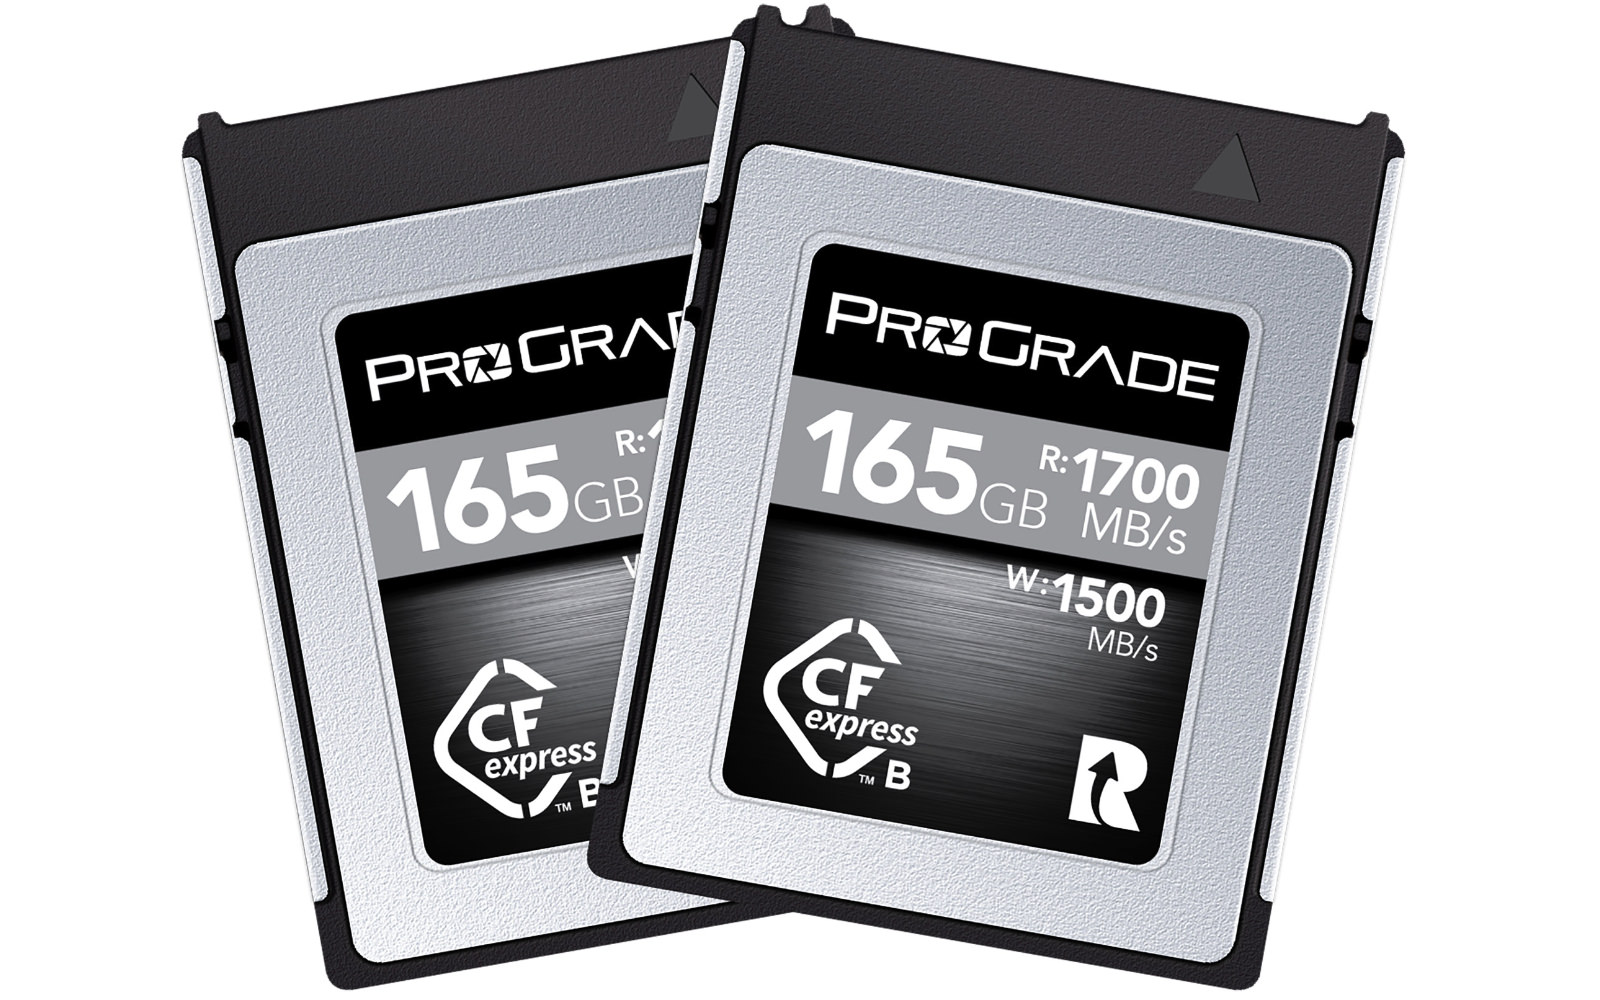 ProGrade 165GB model